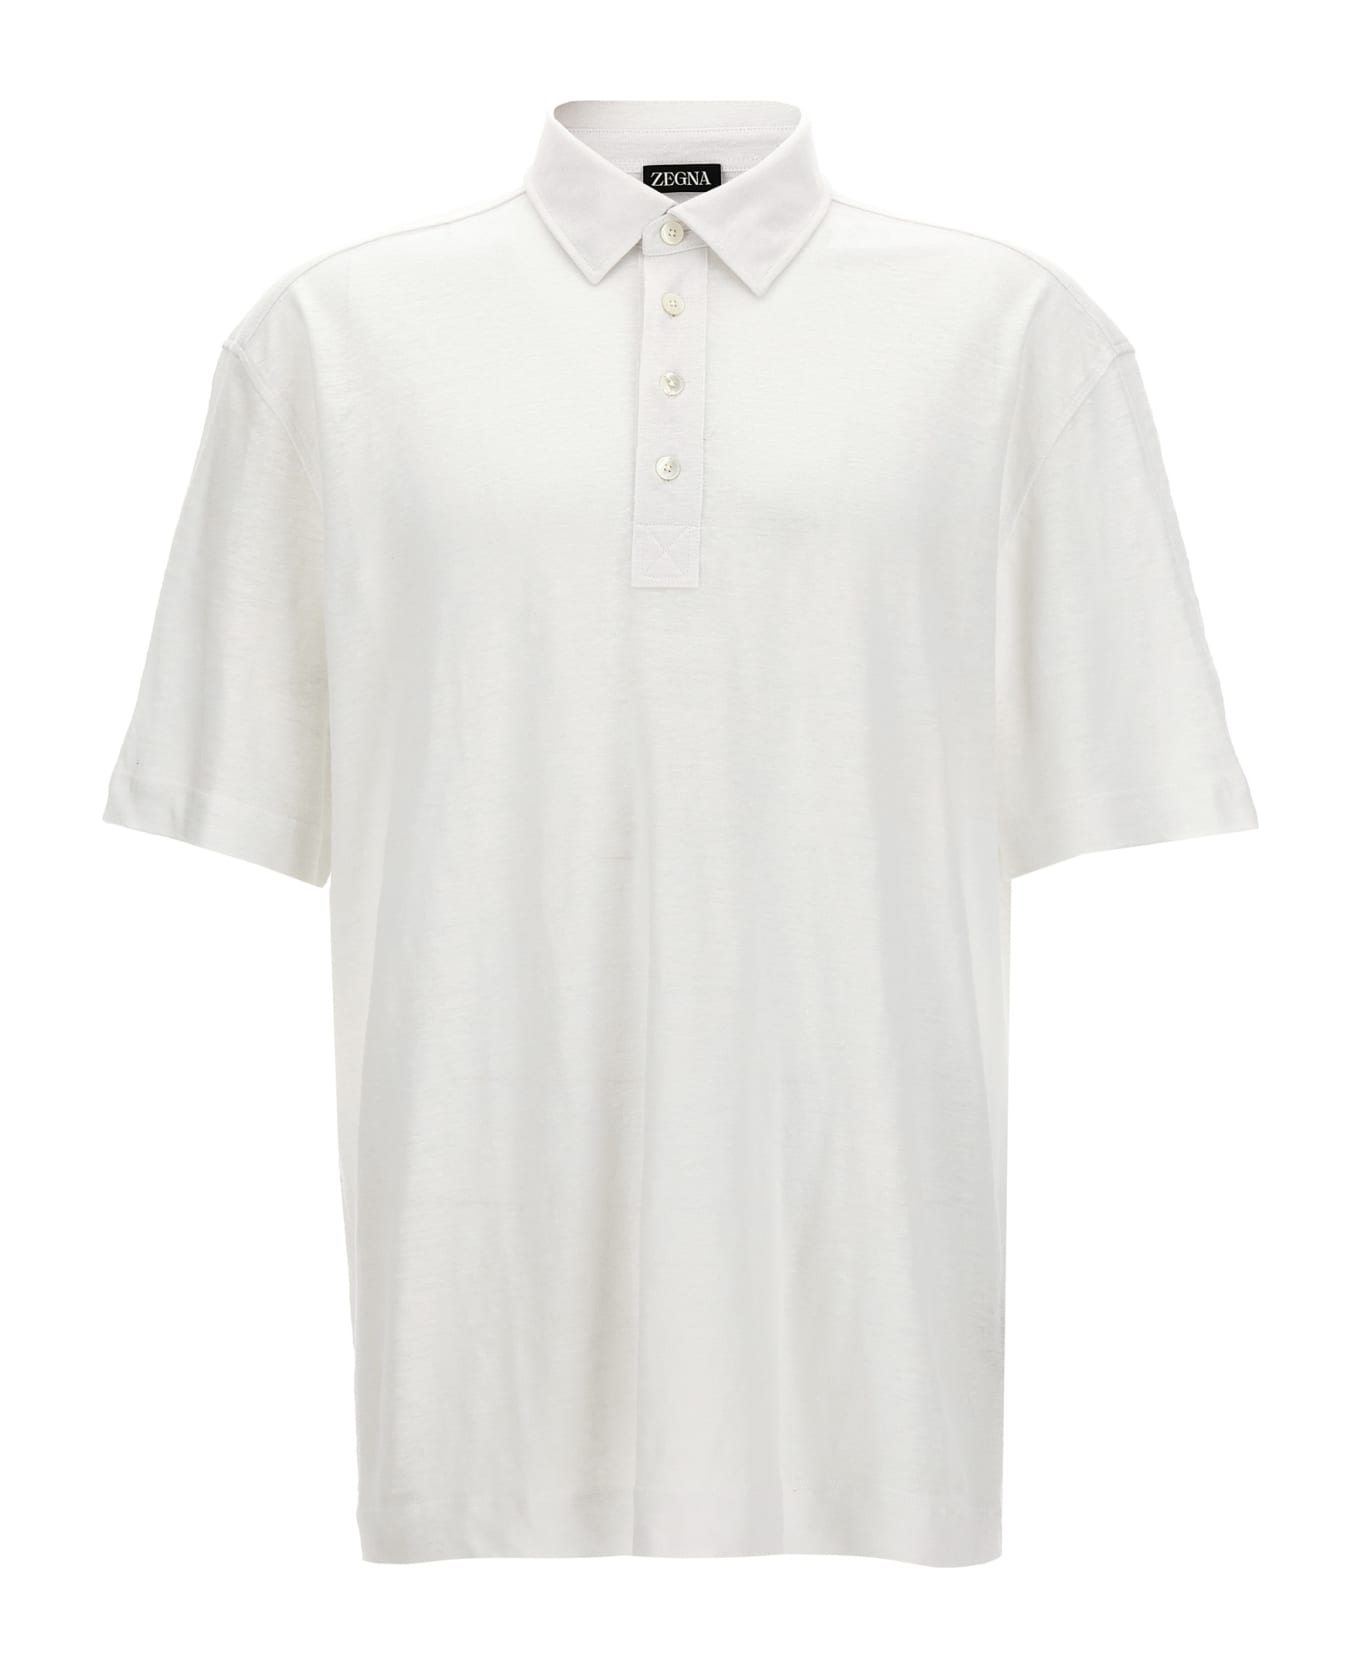 Zegna Linen Polo Shirt - Cream